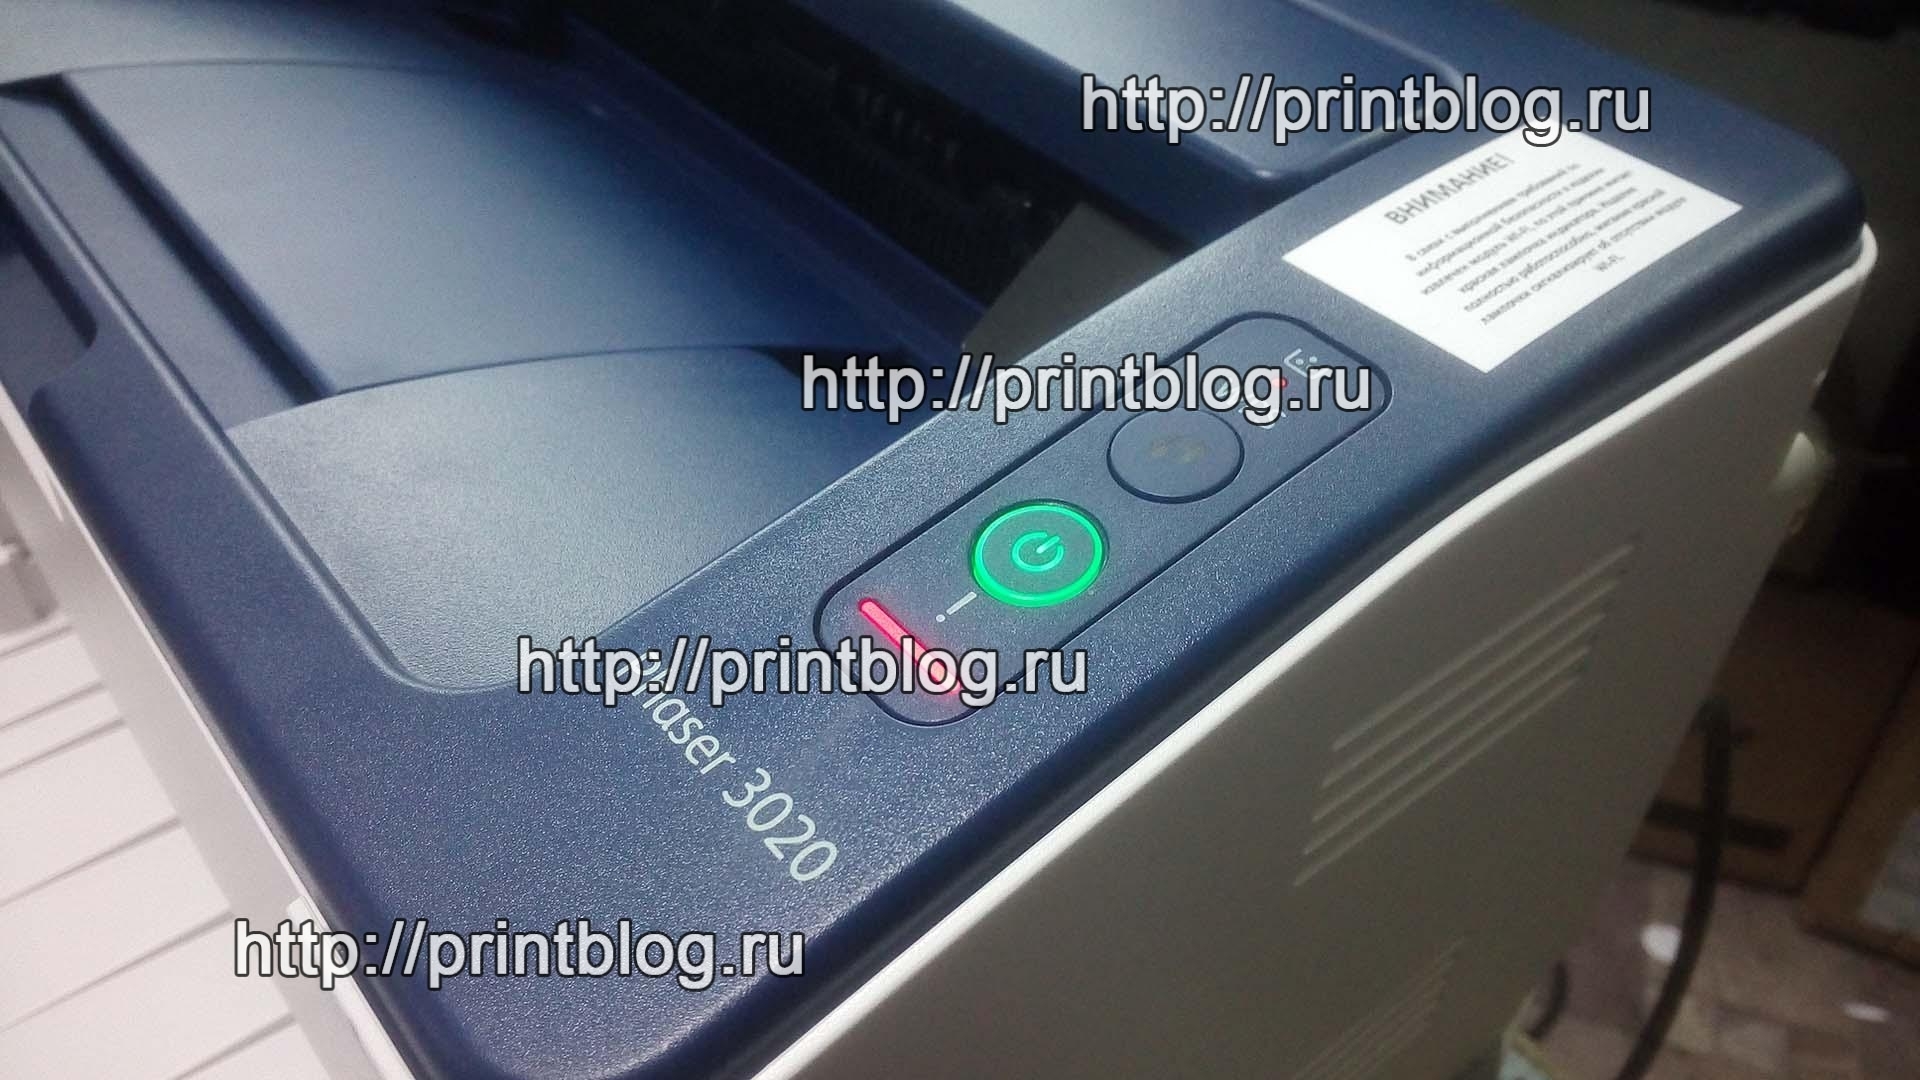 Принтер самсунг clp 365 горит красный индикатор что делать